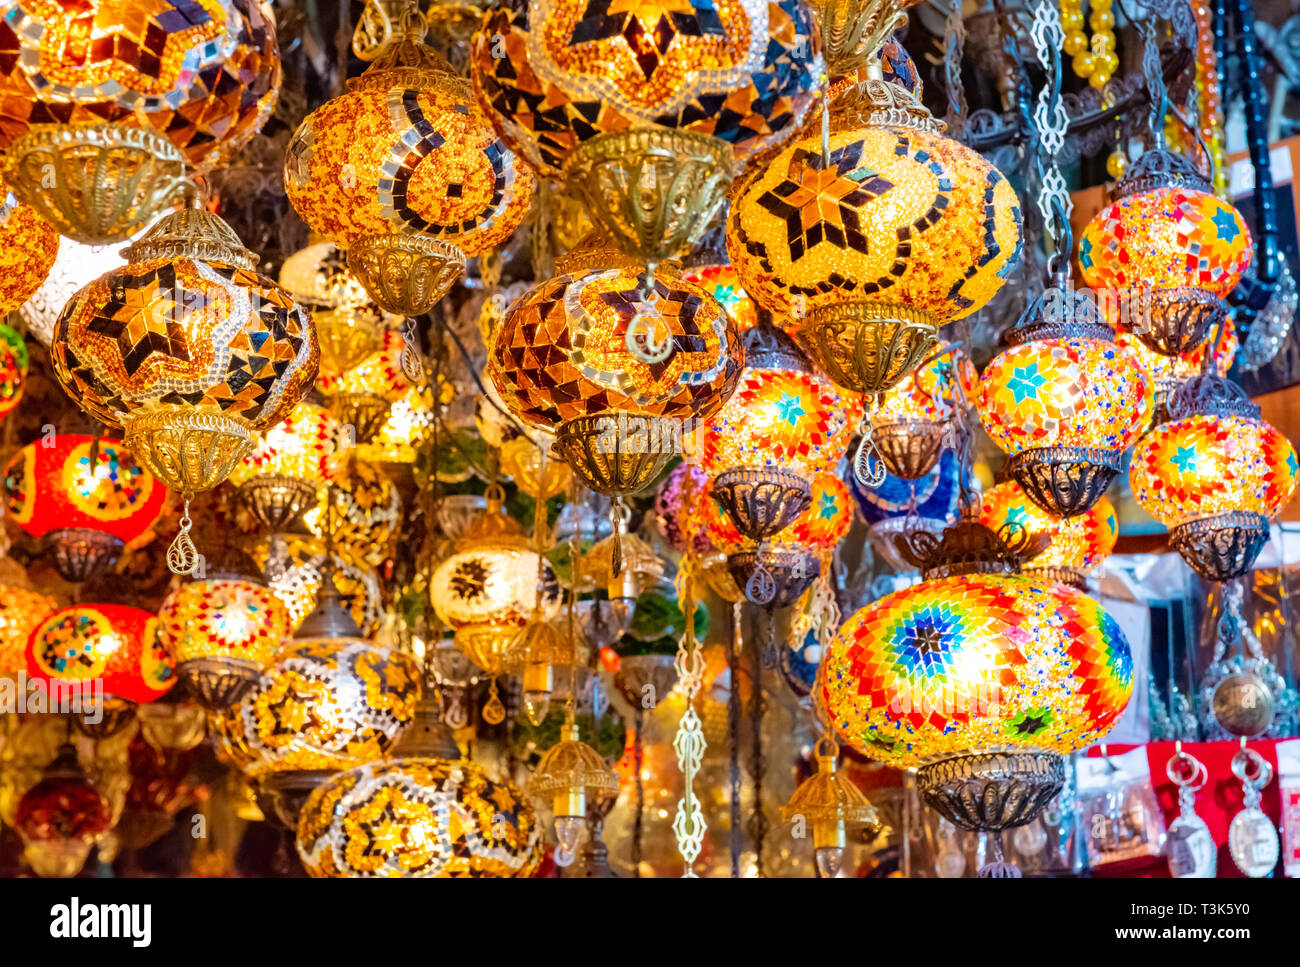 Mehrfarbige authentische Lampen am Großen Basar in Istanbul, Türkei hängen Stockfoto